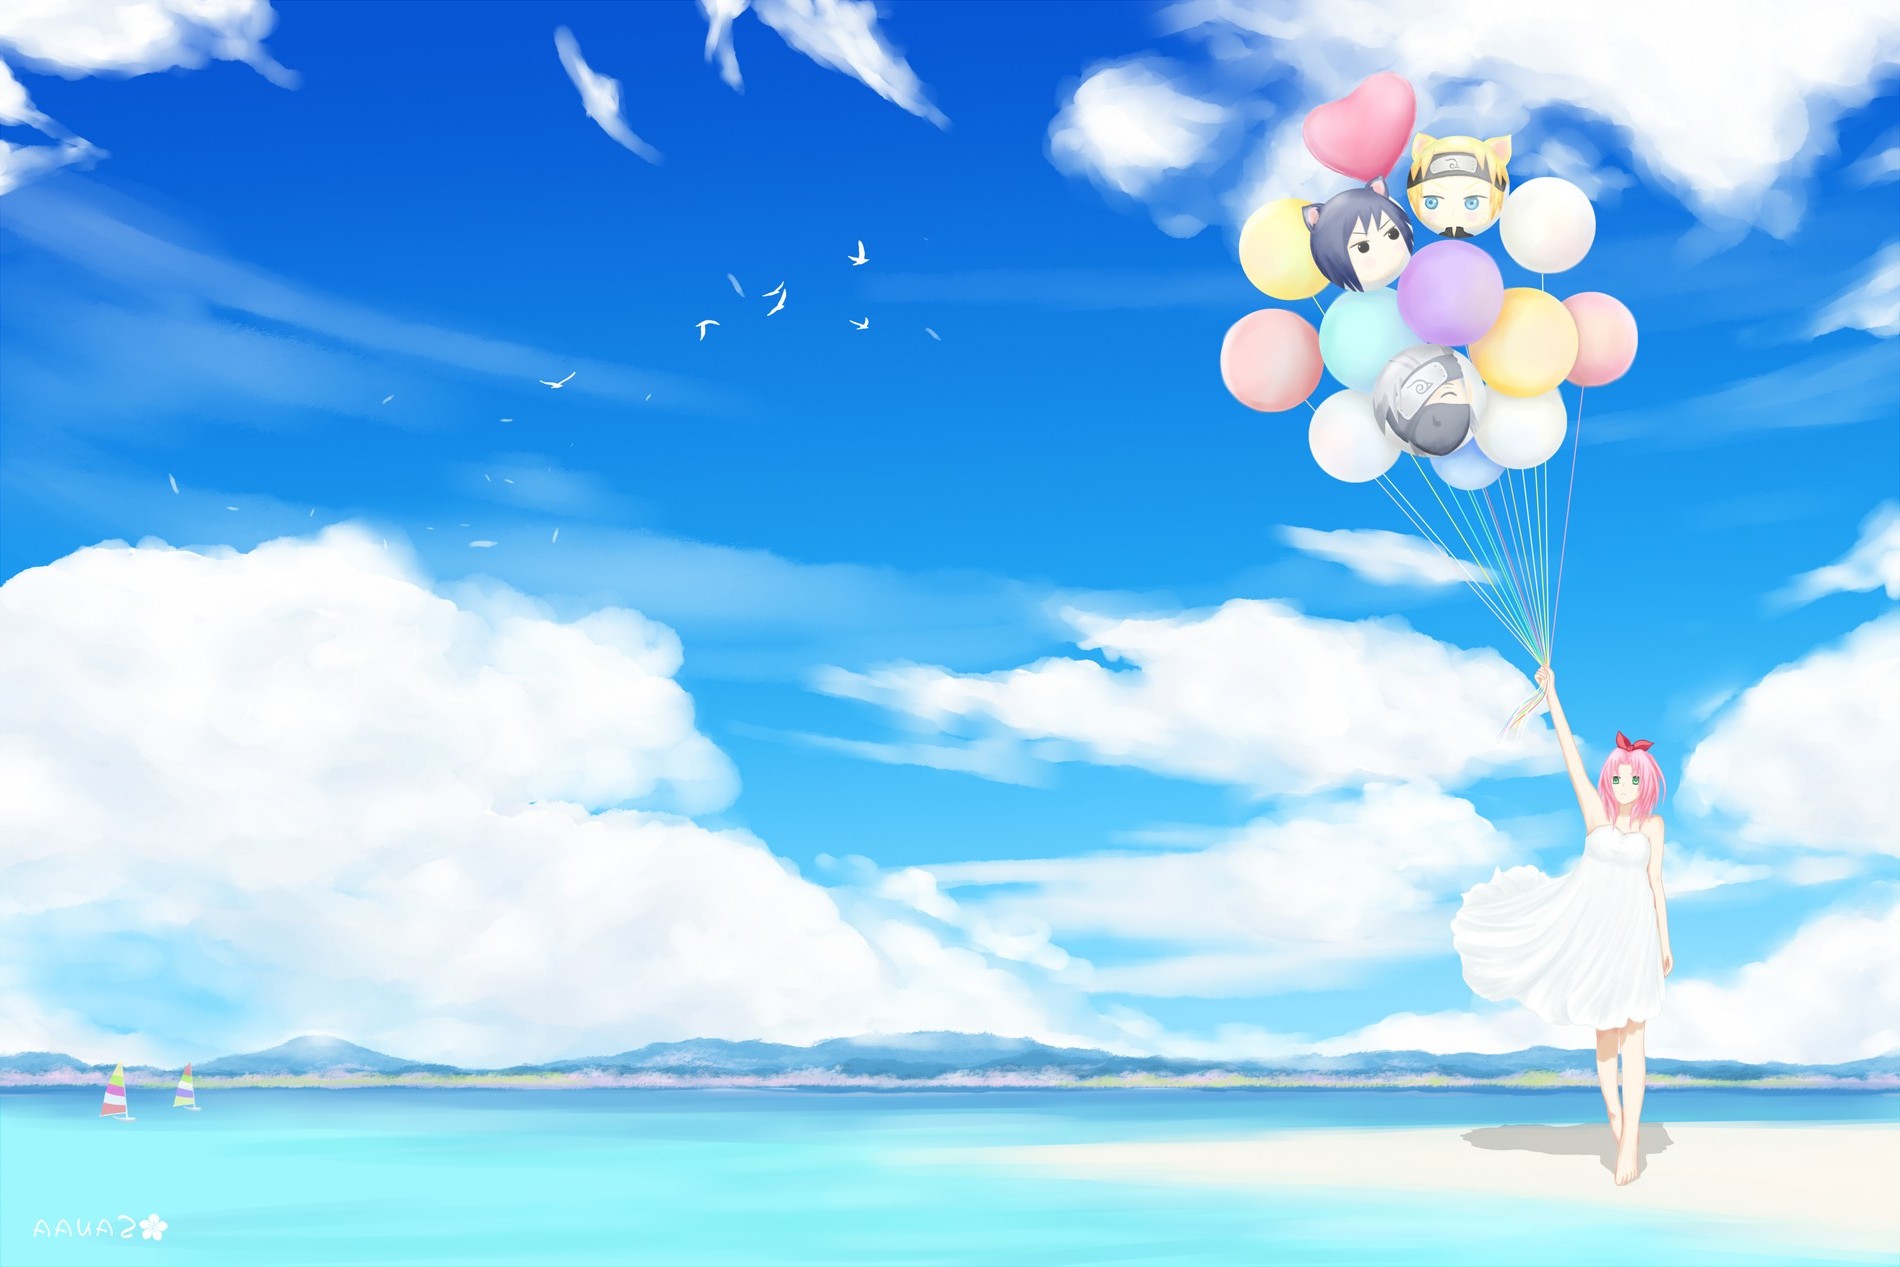 Naruto Shippuuden, Anime, Haruno Sakura, Clouds, Birds, Balloons Wallpaper